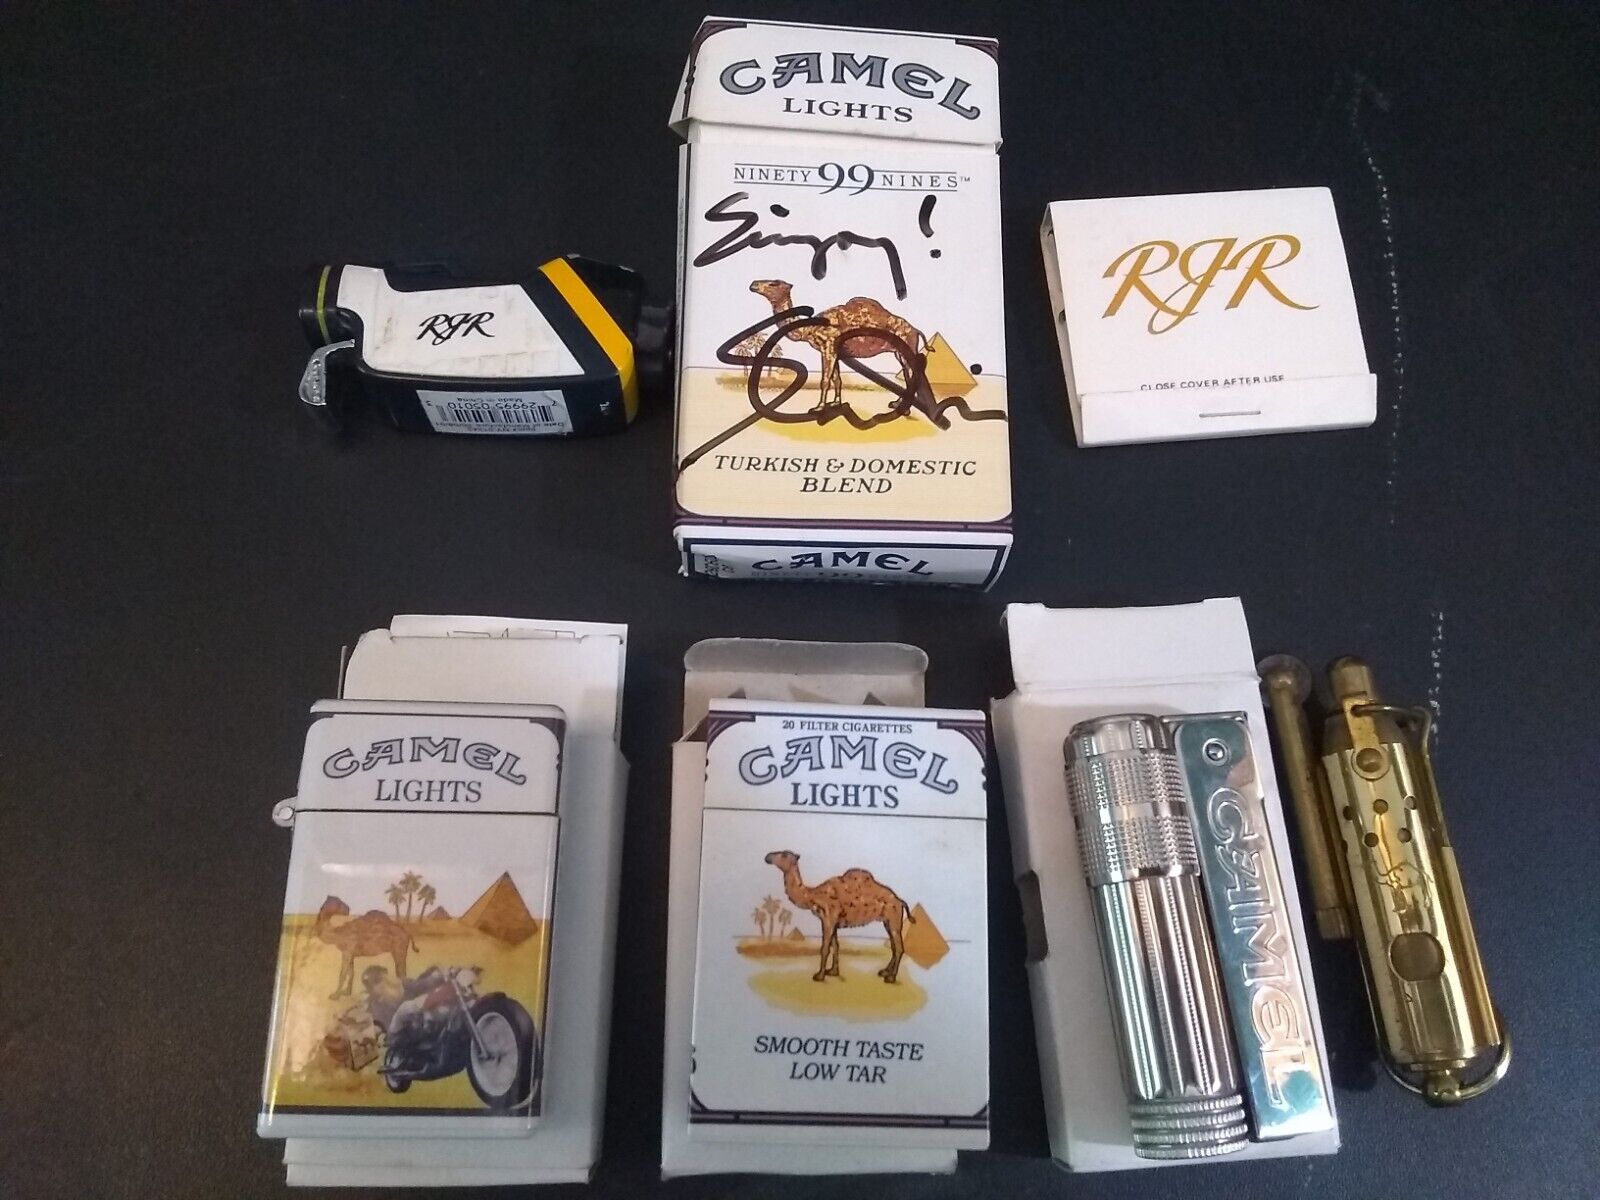 LOT of 4 Vintage CAMEL Cigarette Butane Lighters And RJR Advertising 